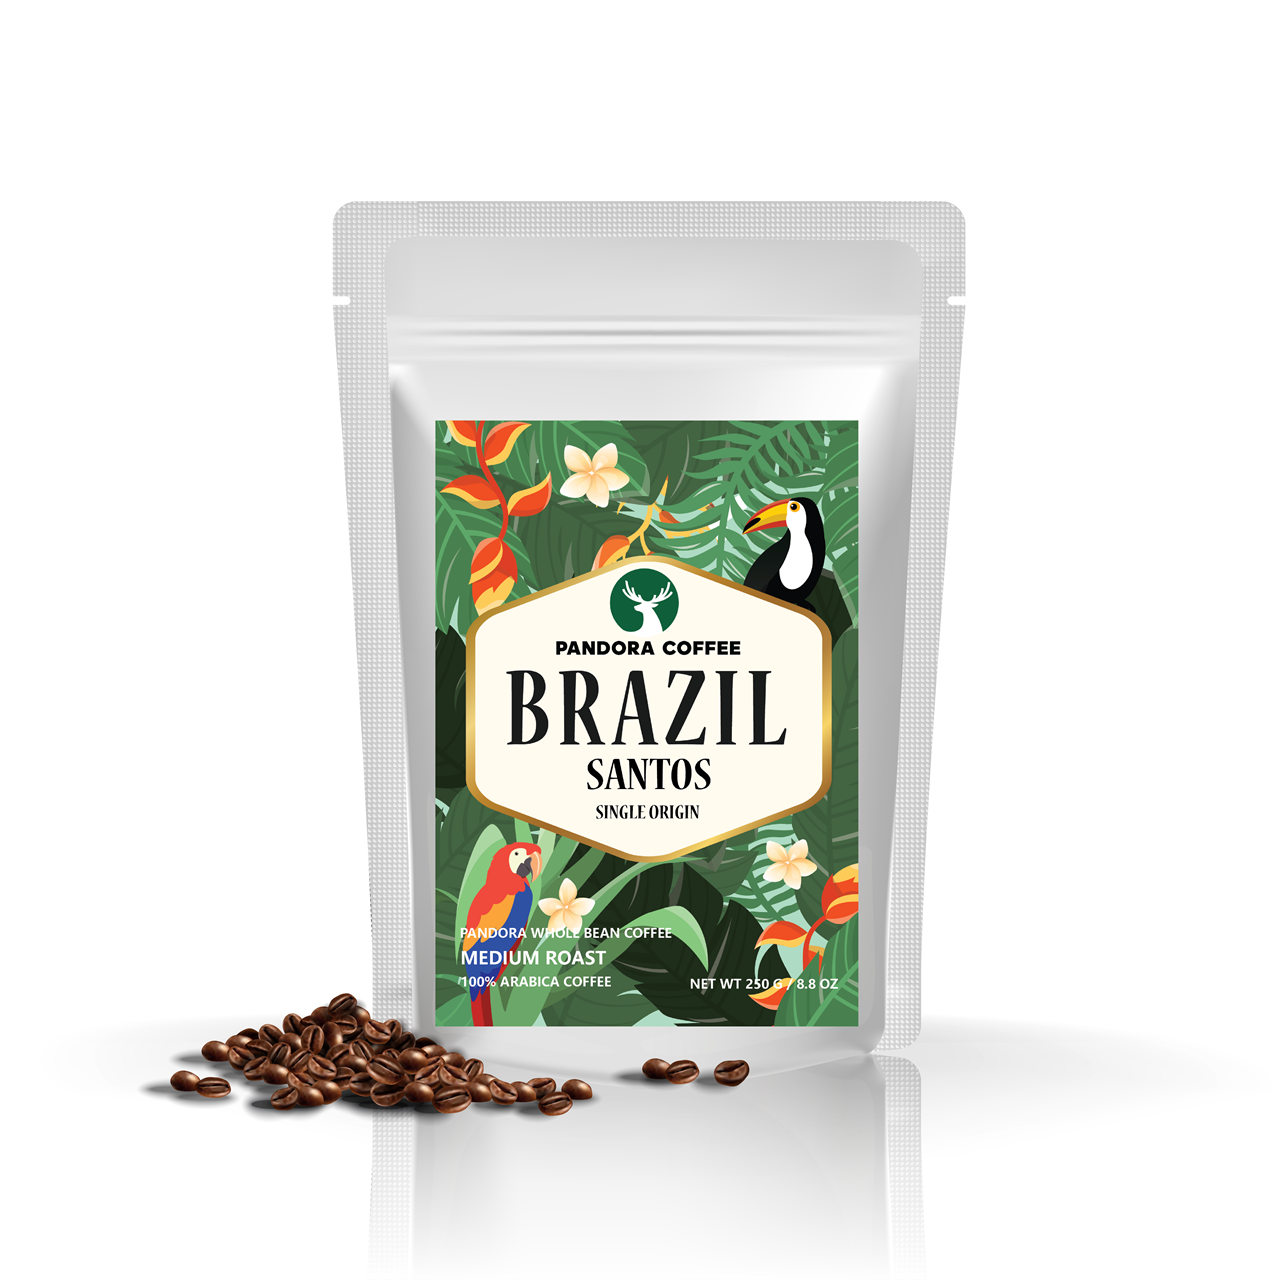 Pandora Coffee เมล็กการแฟ บราซิล Brazil Santos คั่วกลาง Medium Roast